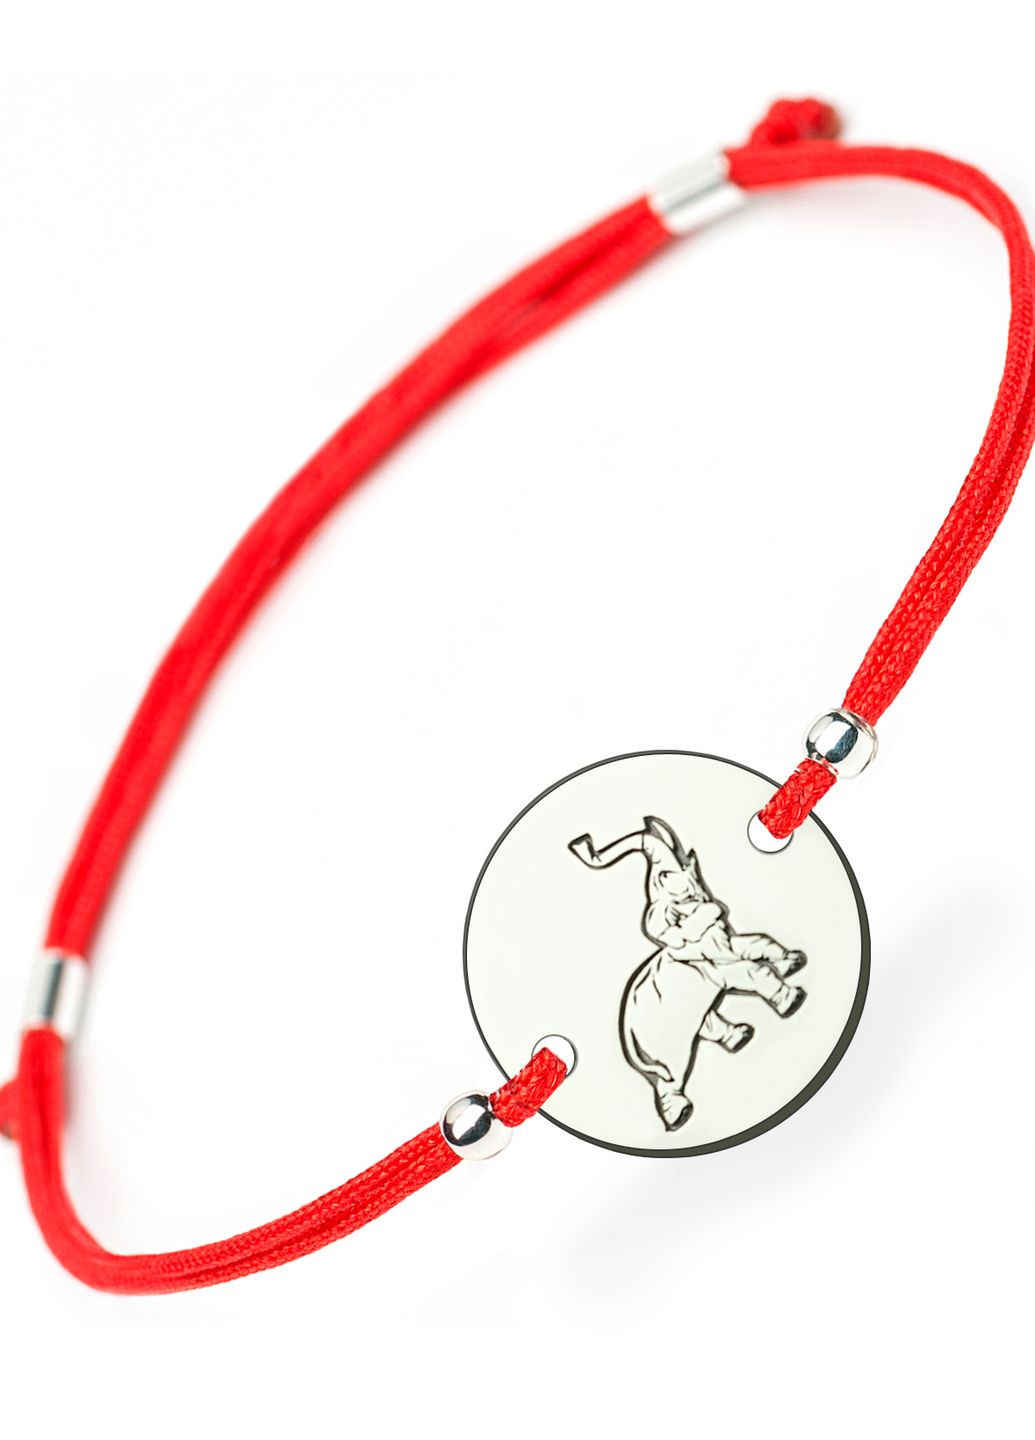 Серебряный браслет красная нить Слон регулируеться родированное серебро Family Tree Jewelry Line (266422832)